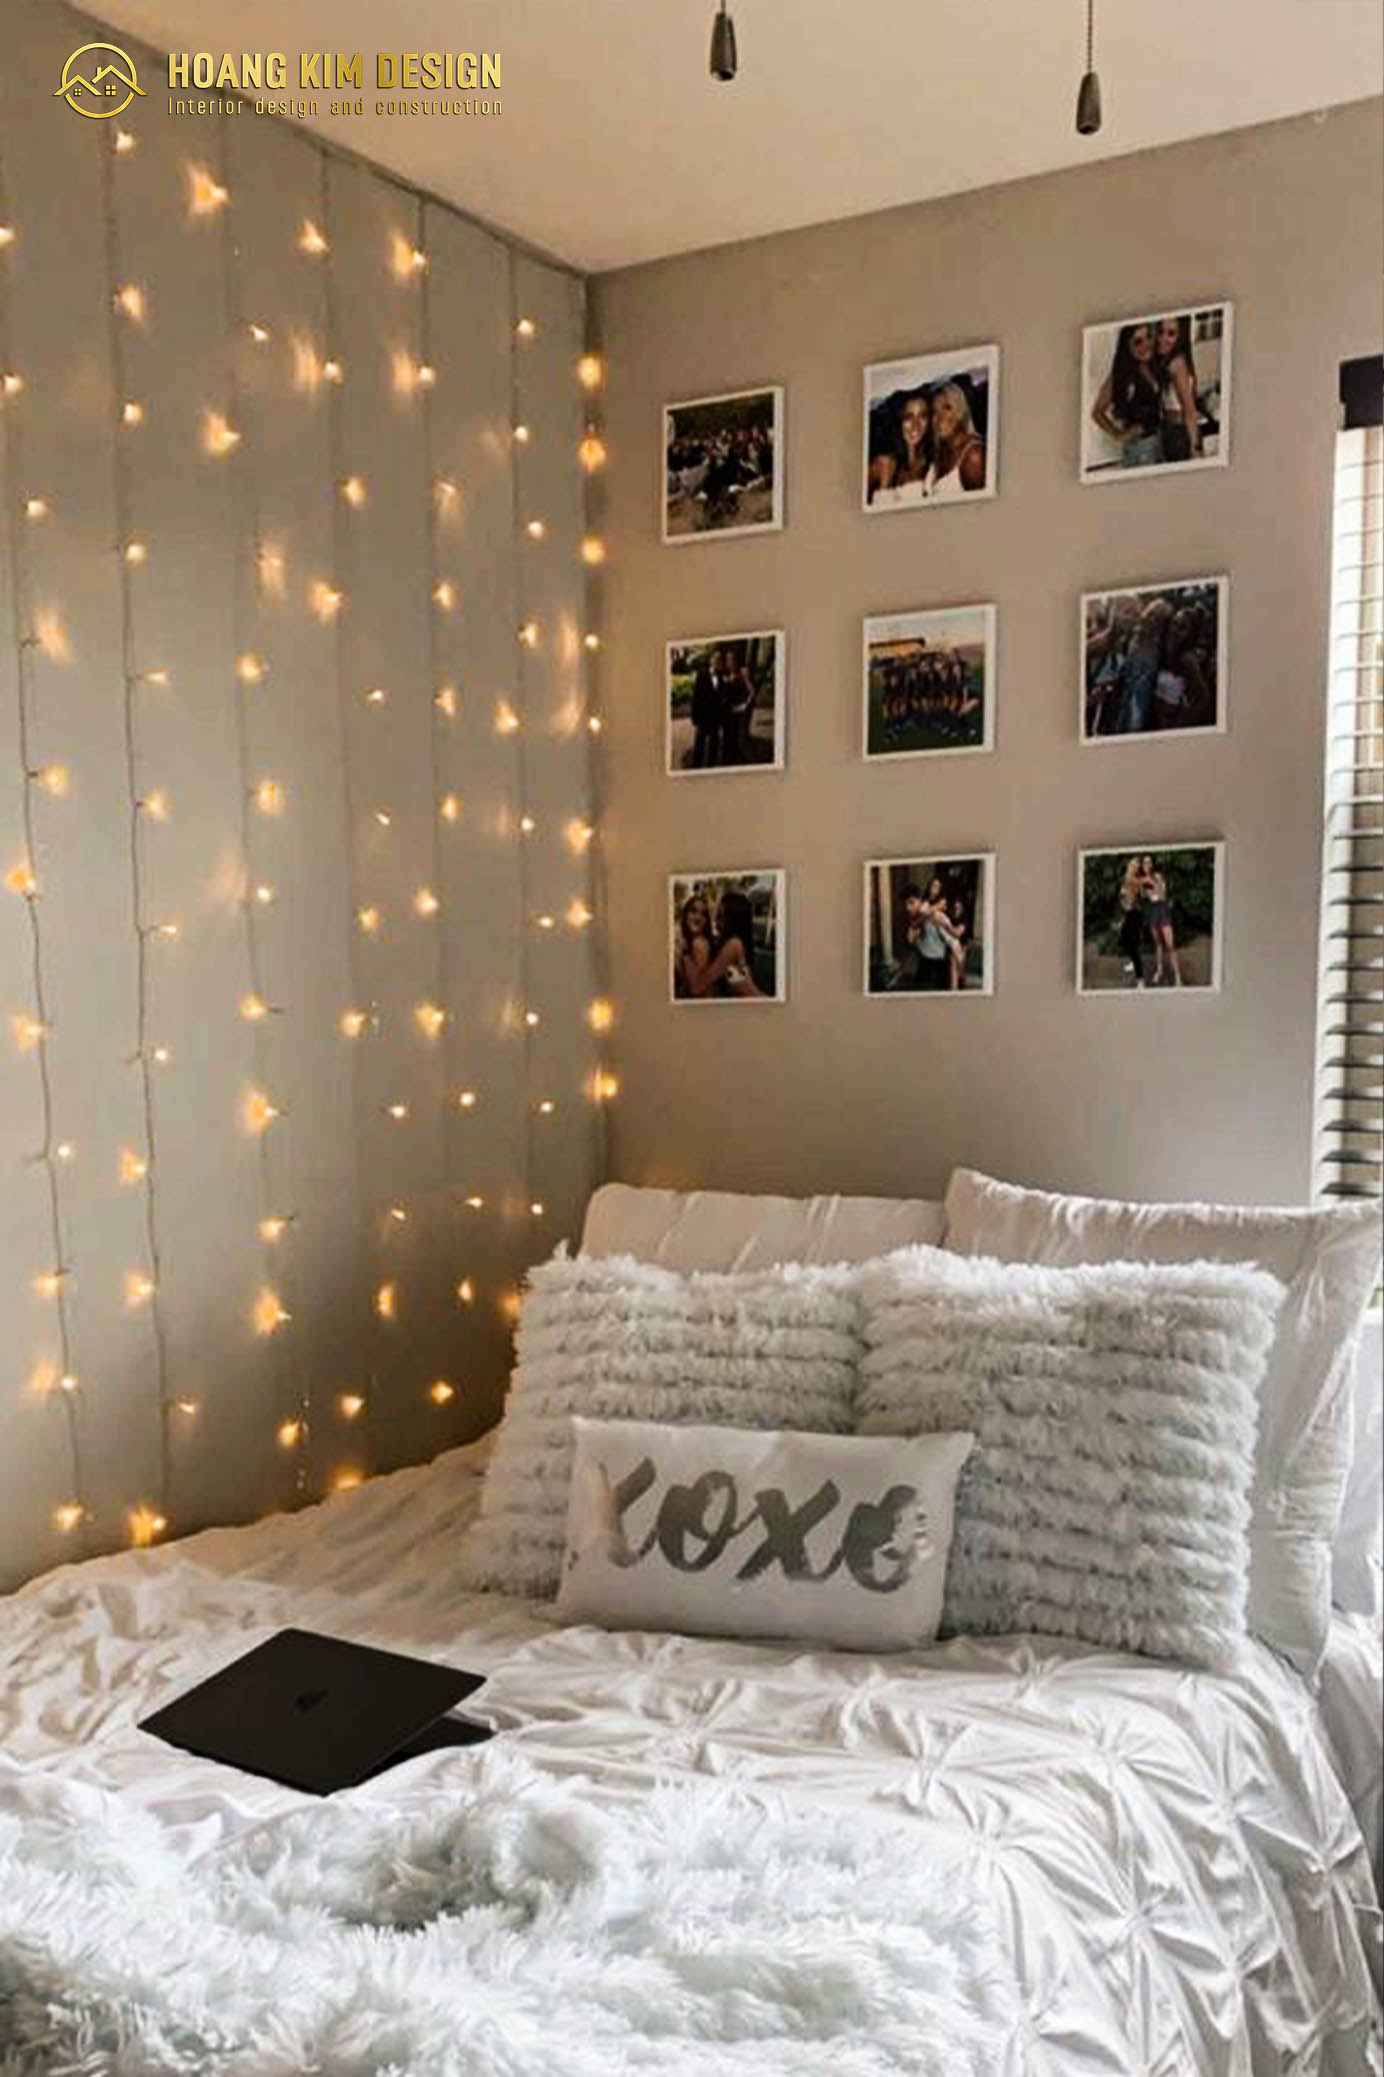 Trang trí phòng ngủ cùng với những dây đèn led sẽ làm tăng sức hút cho căn phòng